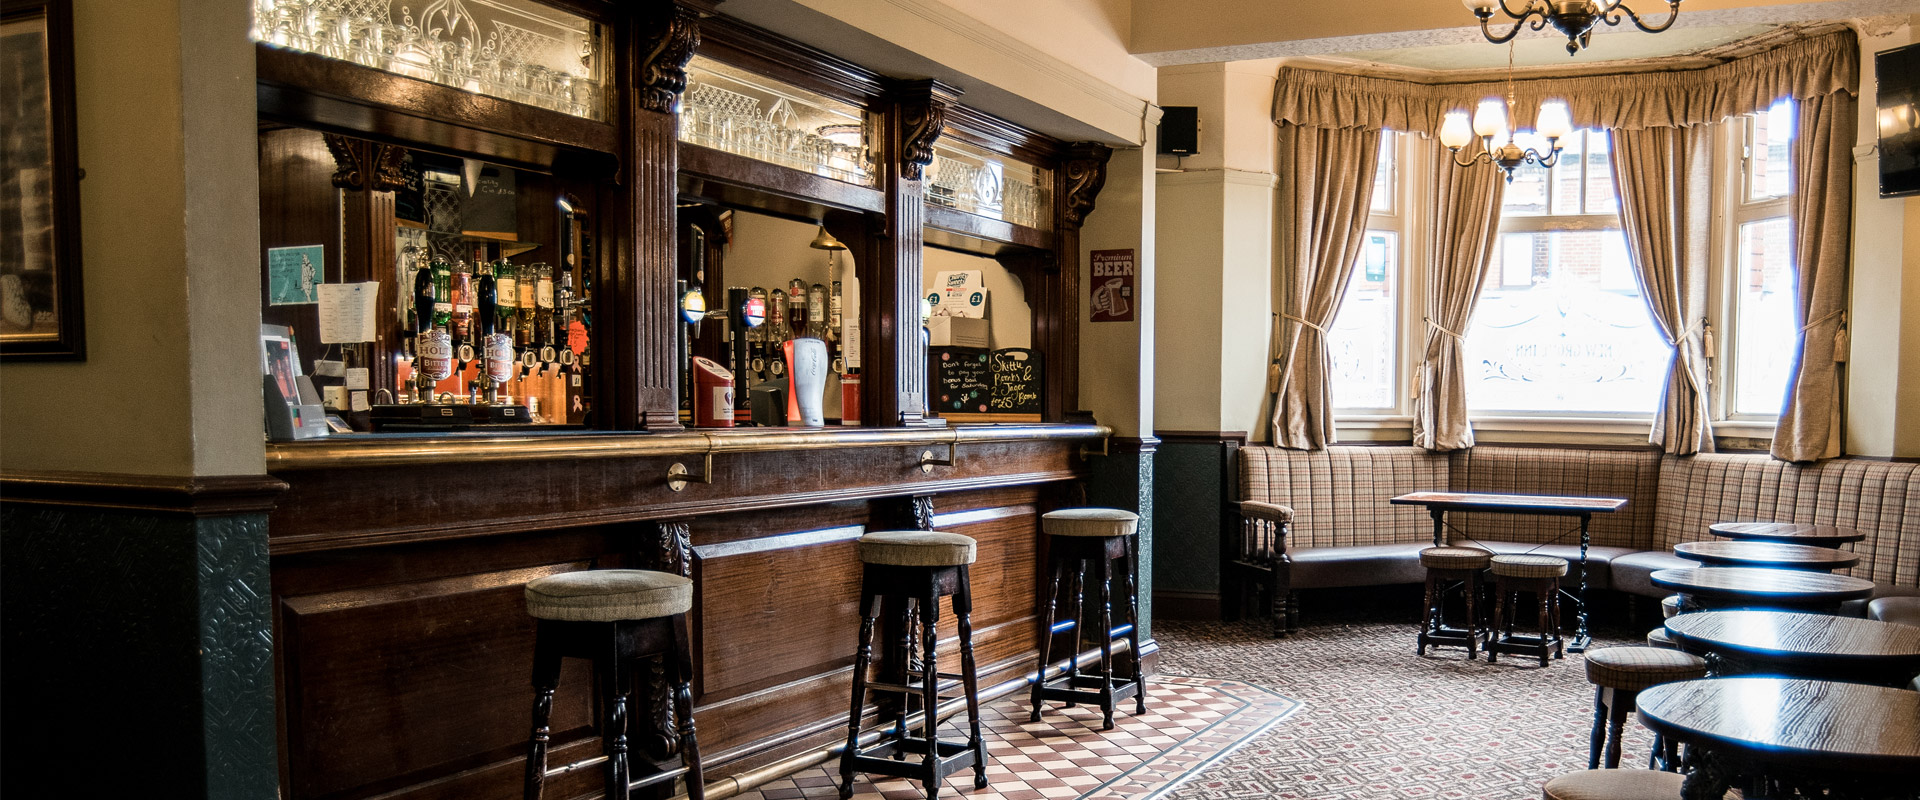 new grove inn pub interior bar area